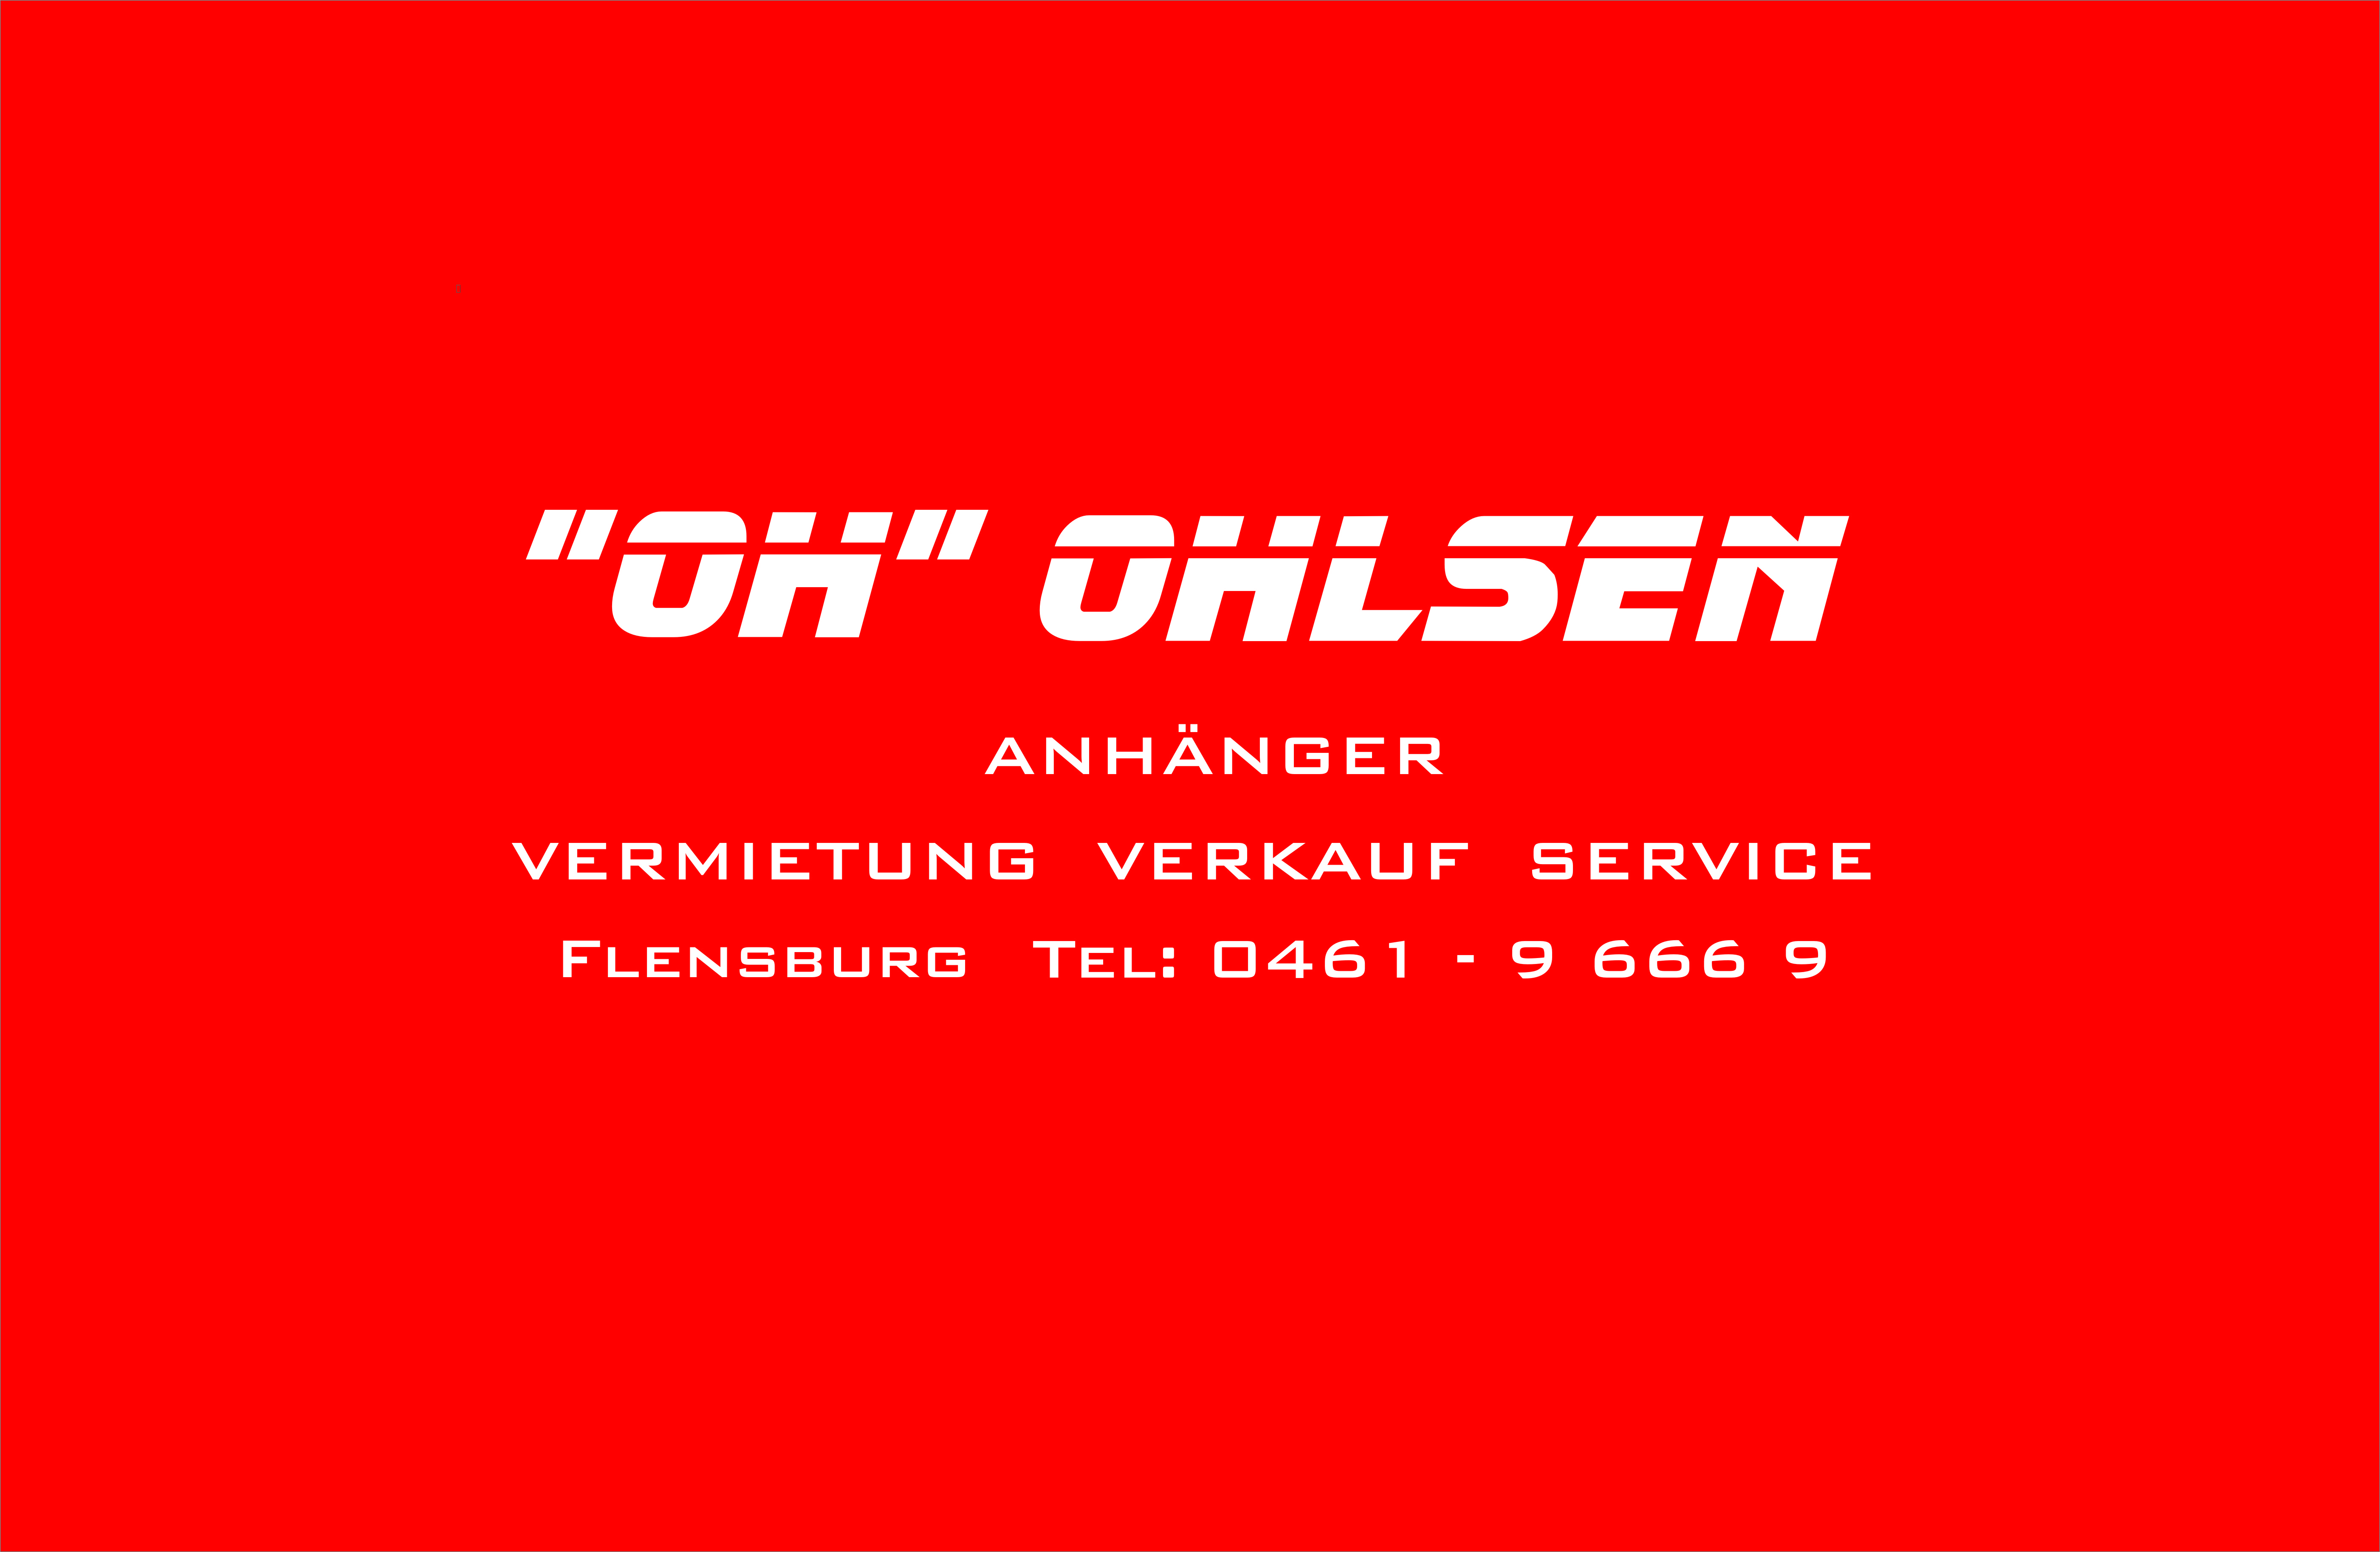 Bild 9 "Oh" Ohlsen in Flensburg